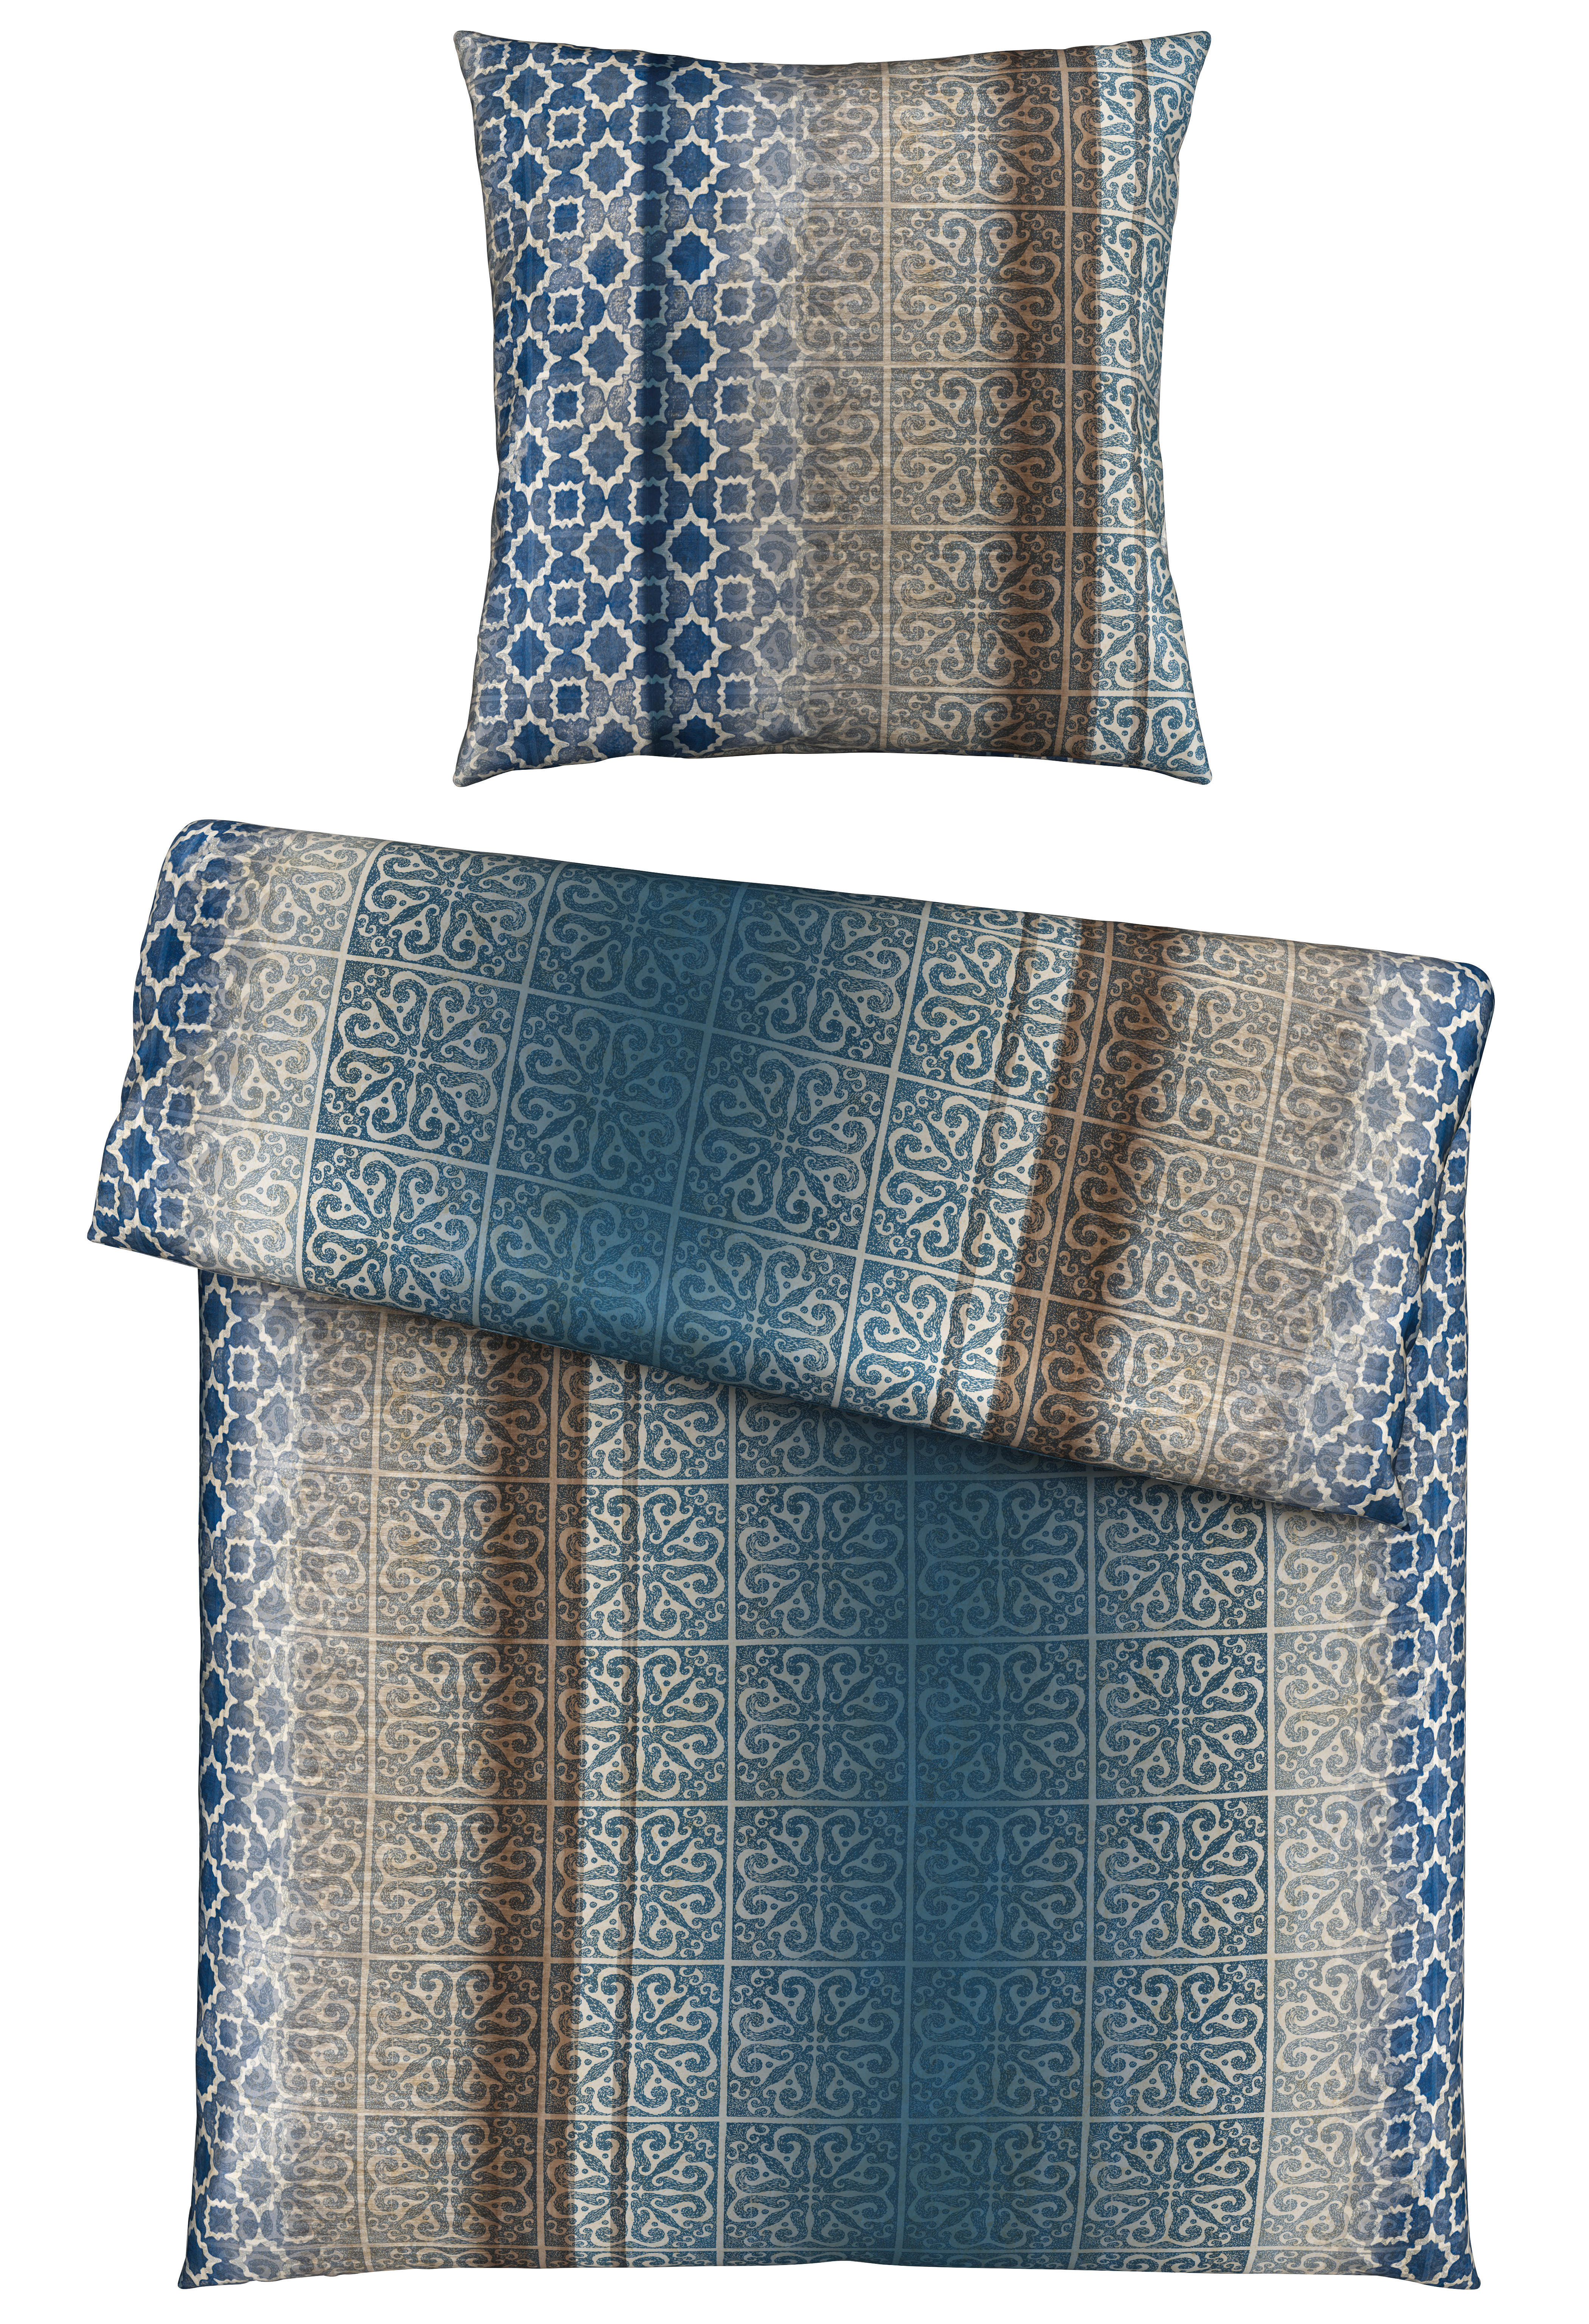 BETTWÄSCHE Satin  - Blau, KONVENTIONELL, Textil (135/200cm) - Esposa